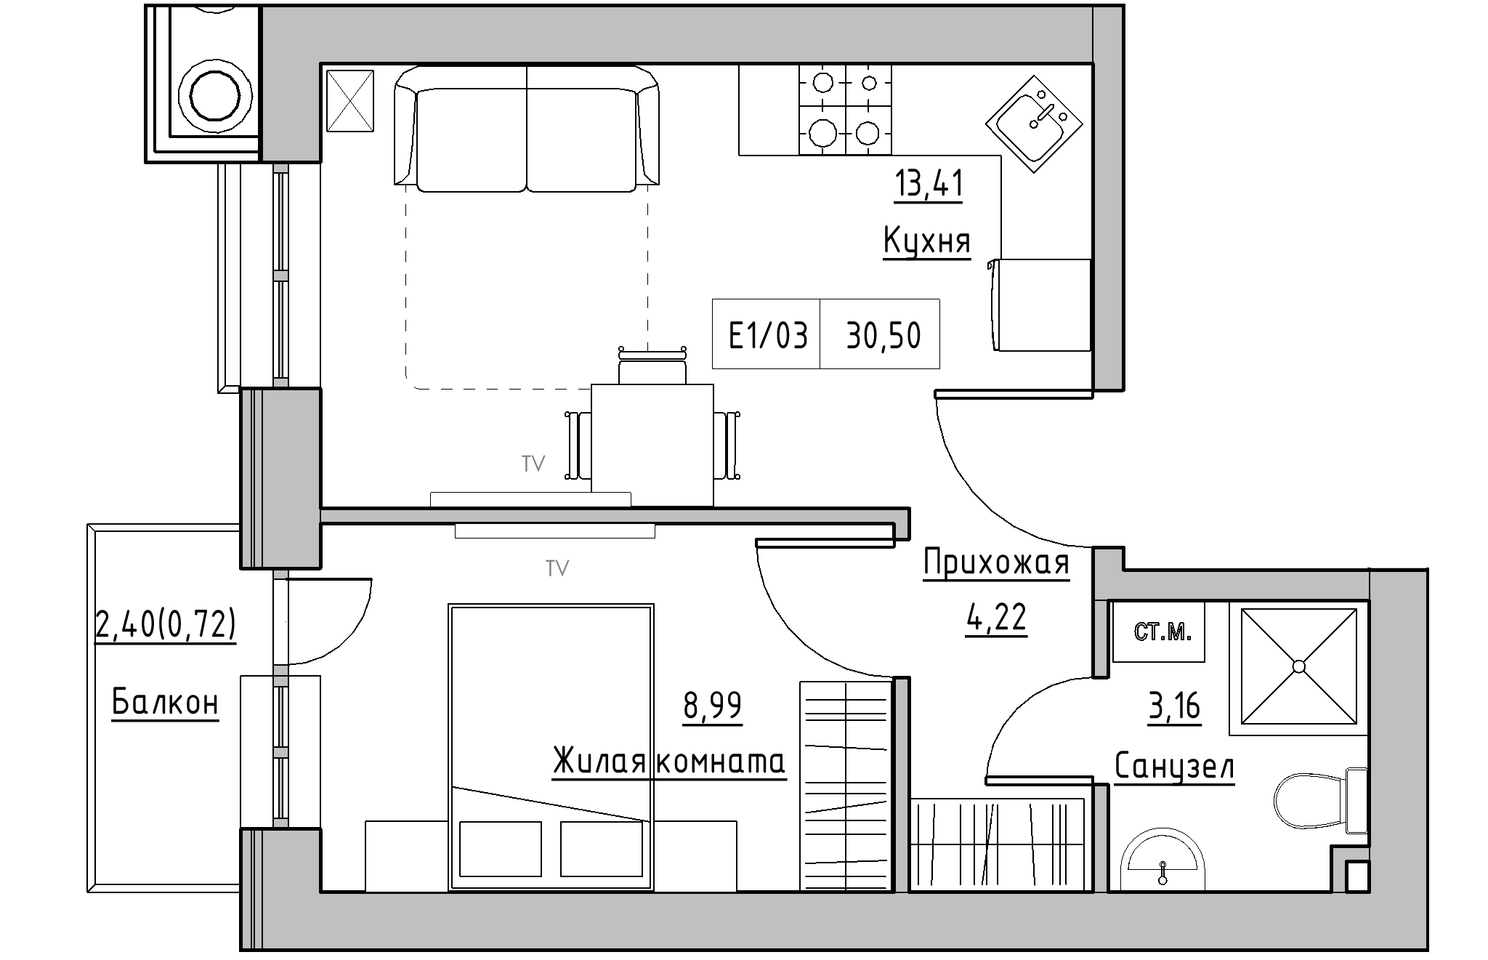 Планування 1-к квартира площею 30.5м2, KS-010-03/0012.